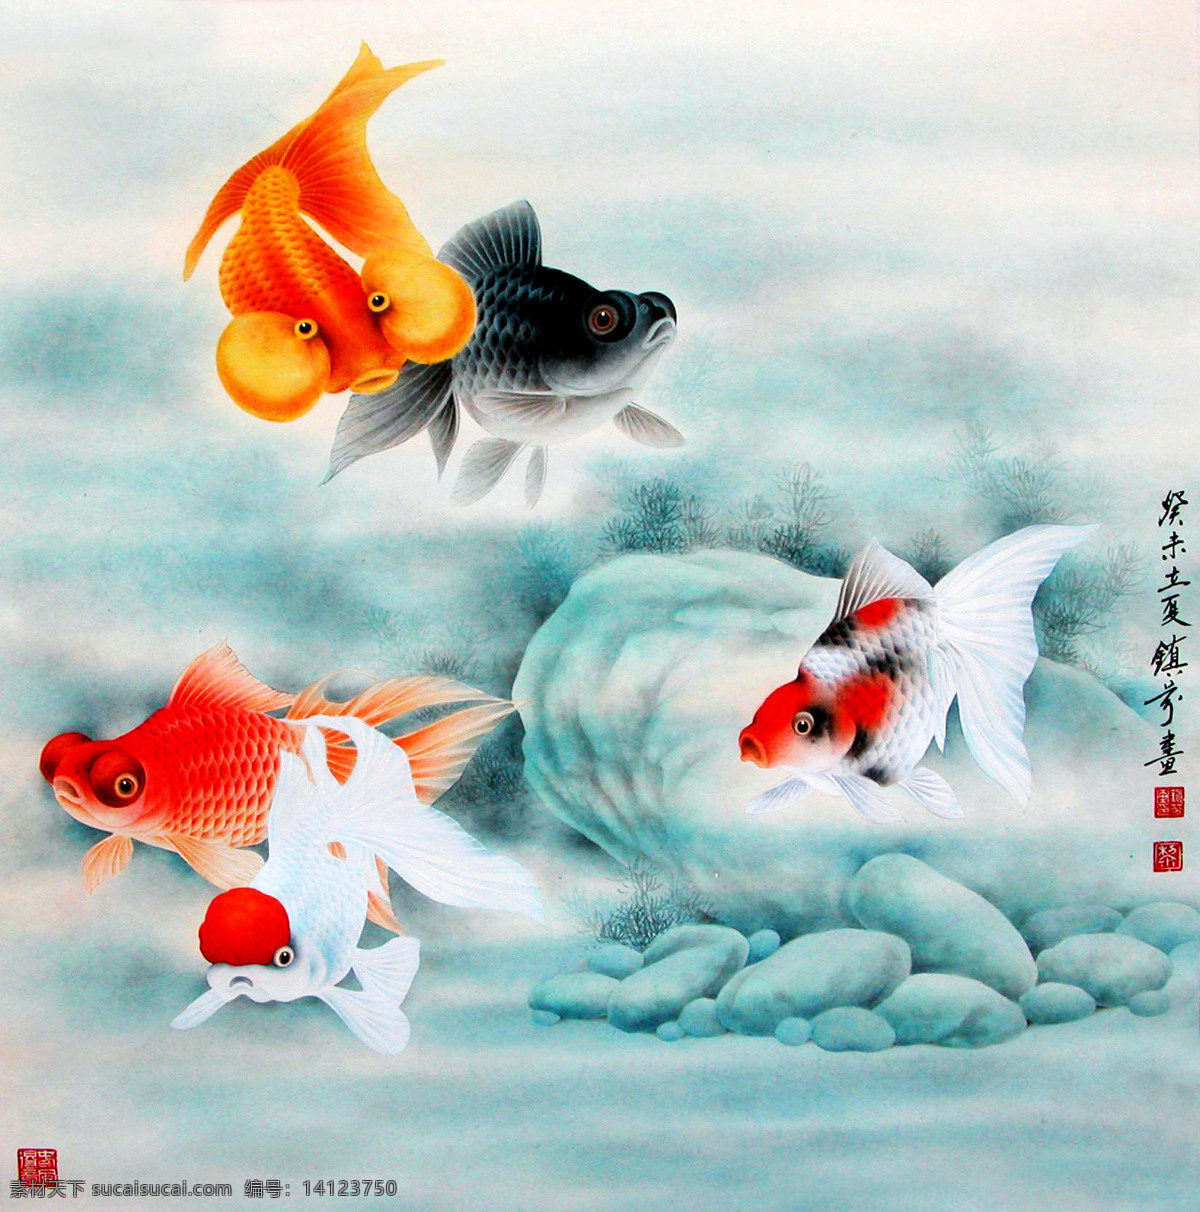 金鱼图 美术 绘画 中国画 工笔重彩画 鱼 金鱼 水景 石头 书法 印章 国画艺术 工笔鱼图 绘画书法 文化艺术